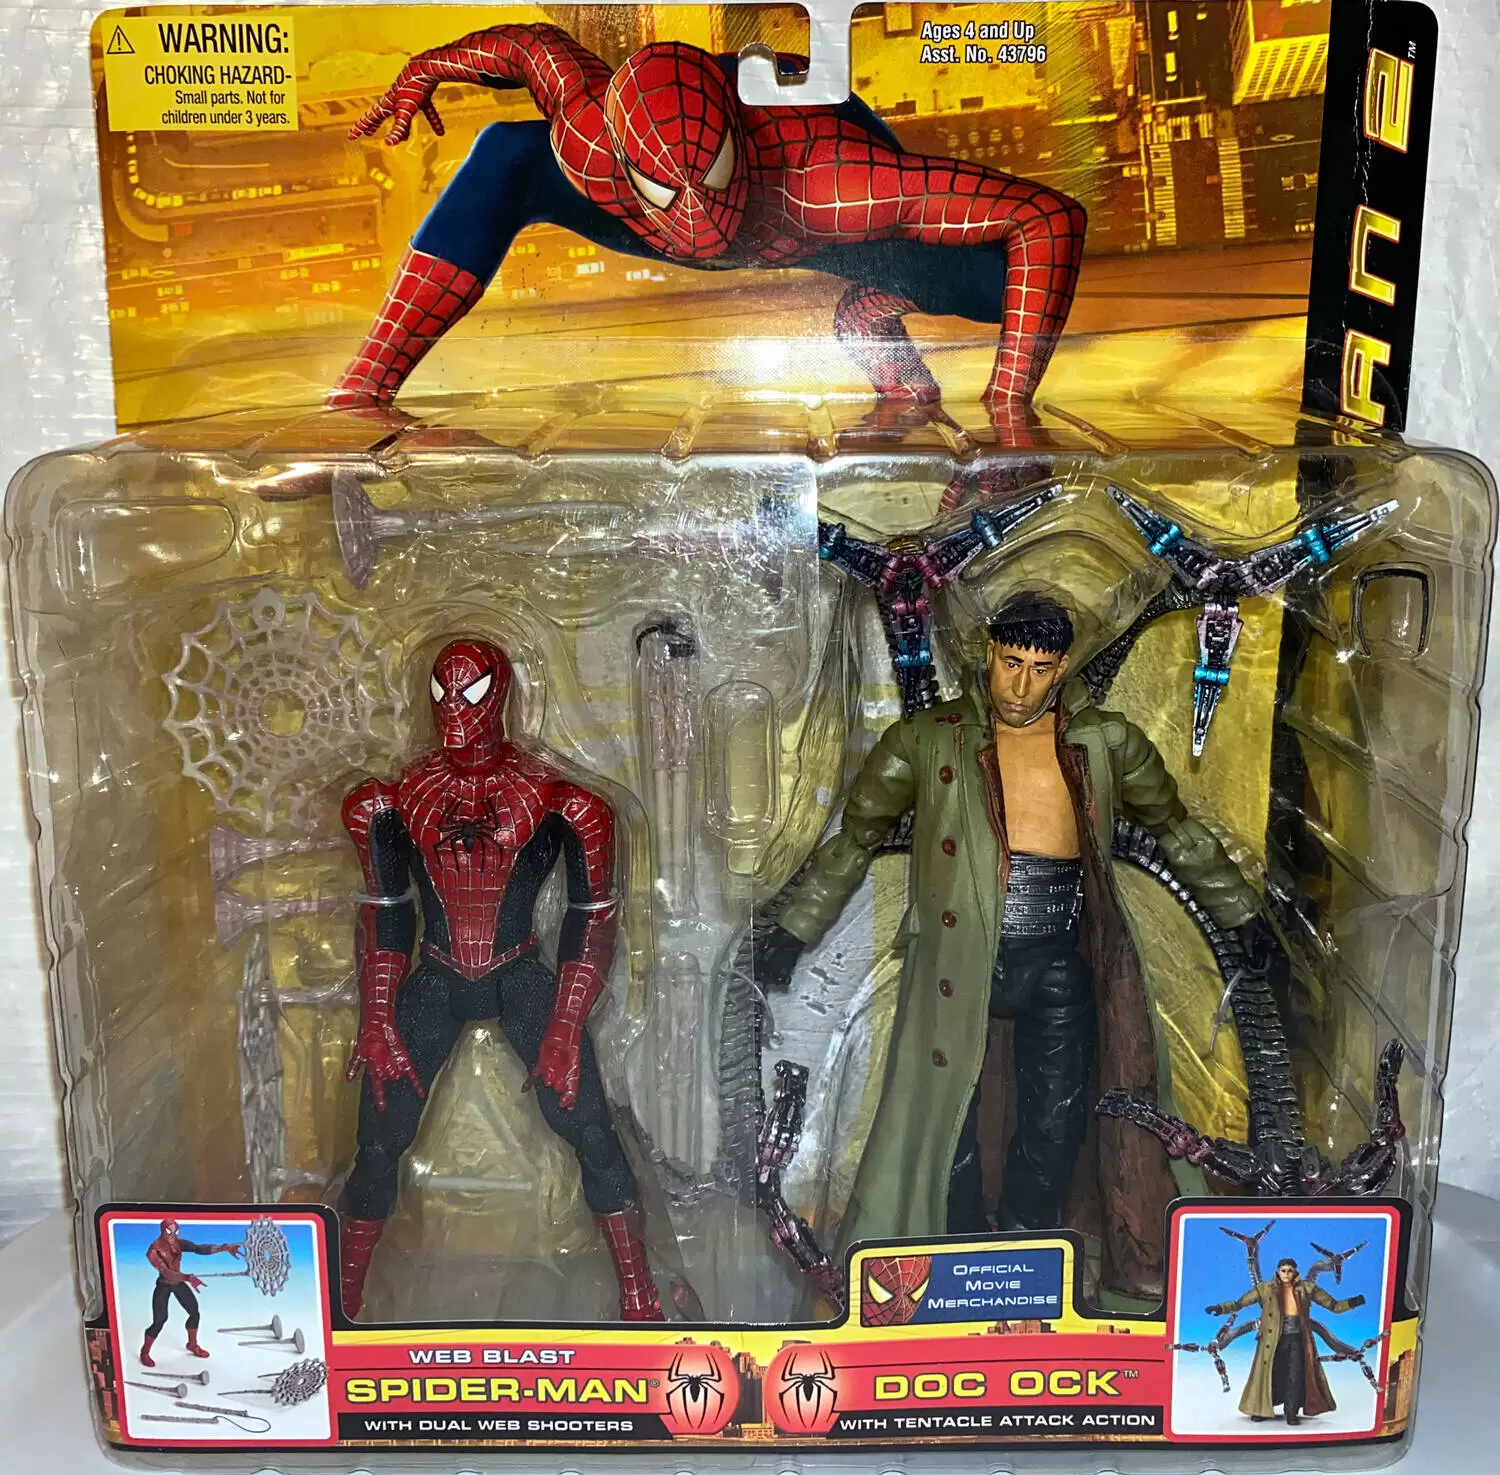 Spider-Man Web Blast & Doc Ock - Spider-Man 2 action figure